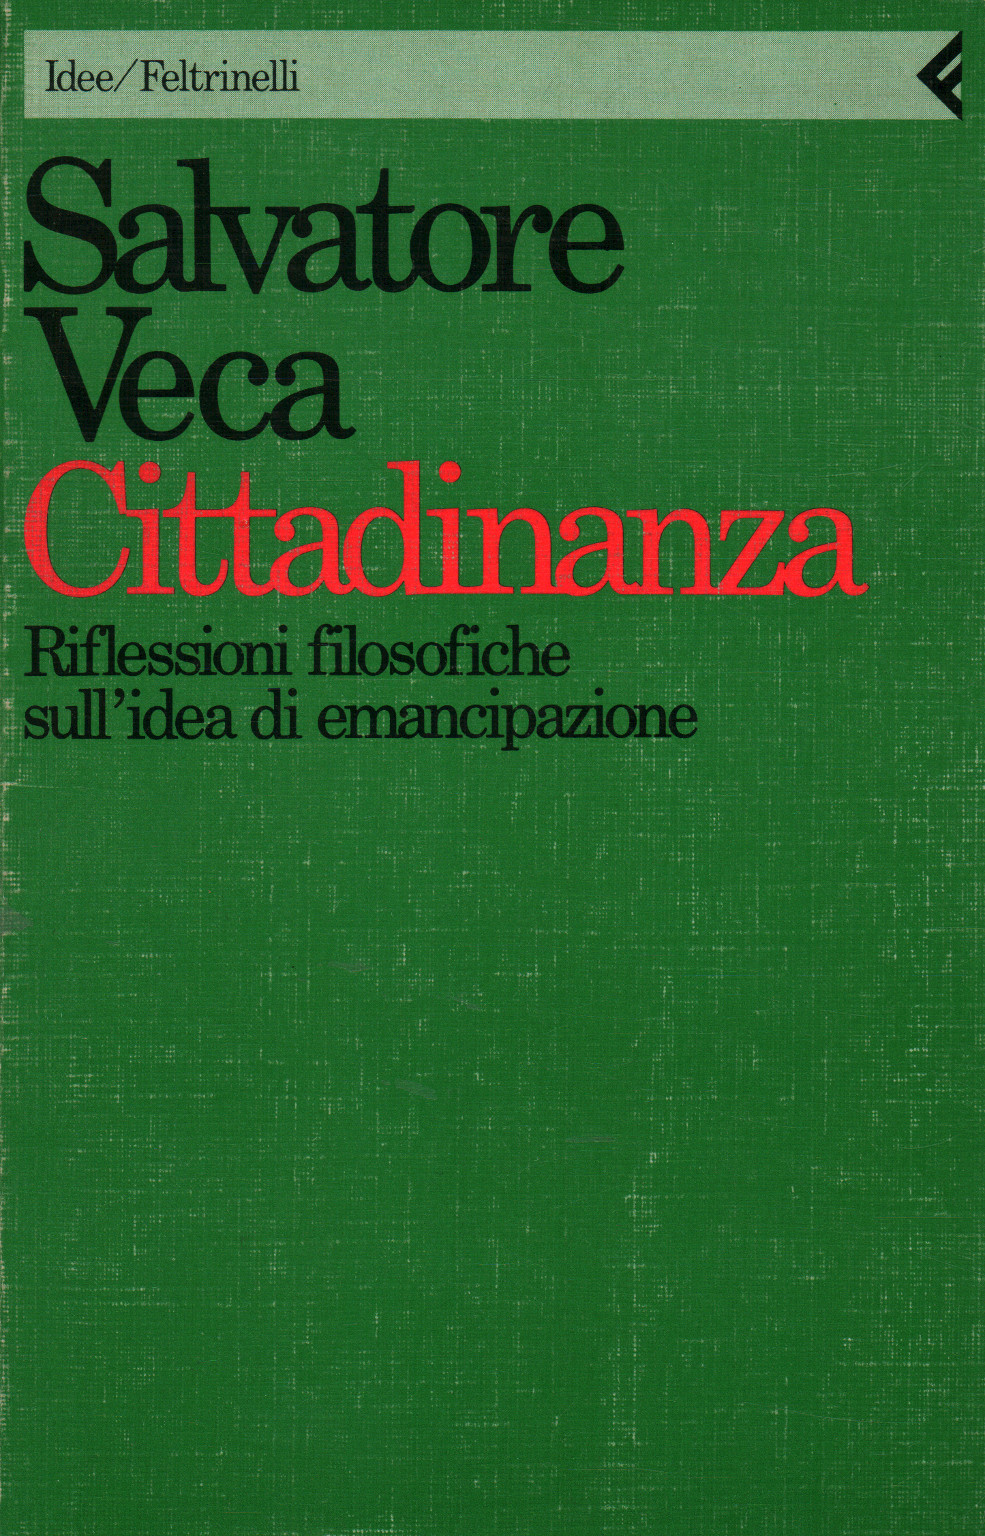 La Citoyenneté, Salvatore Veca